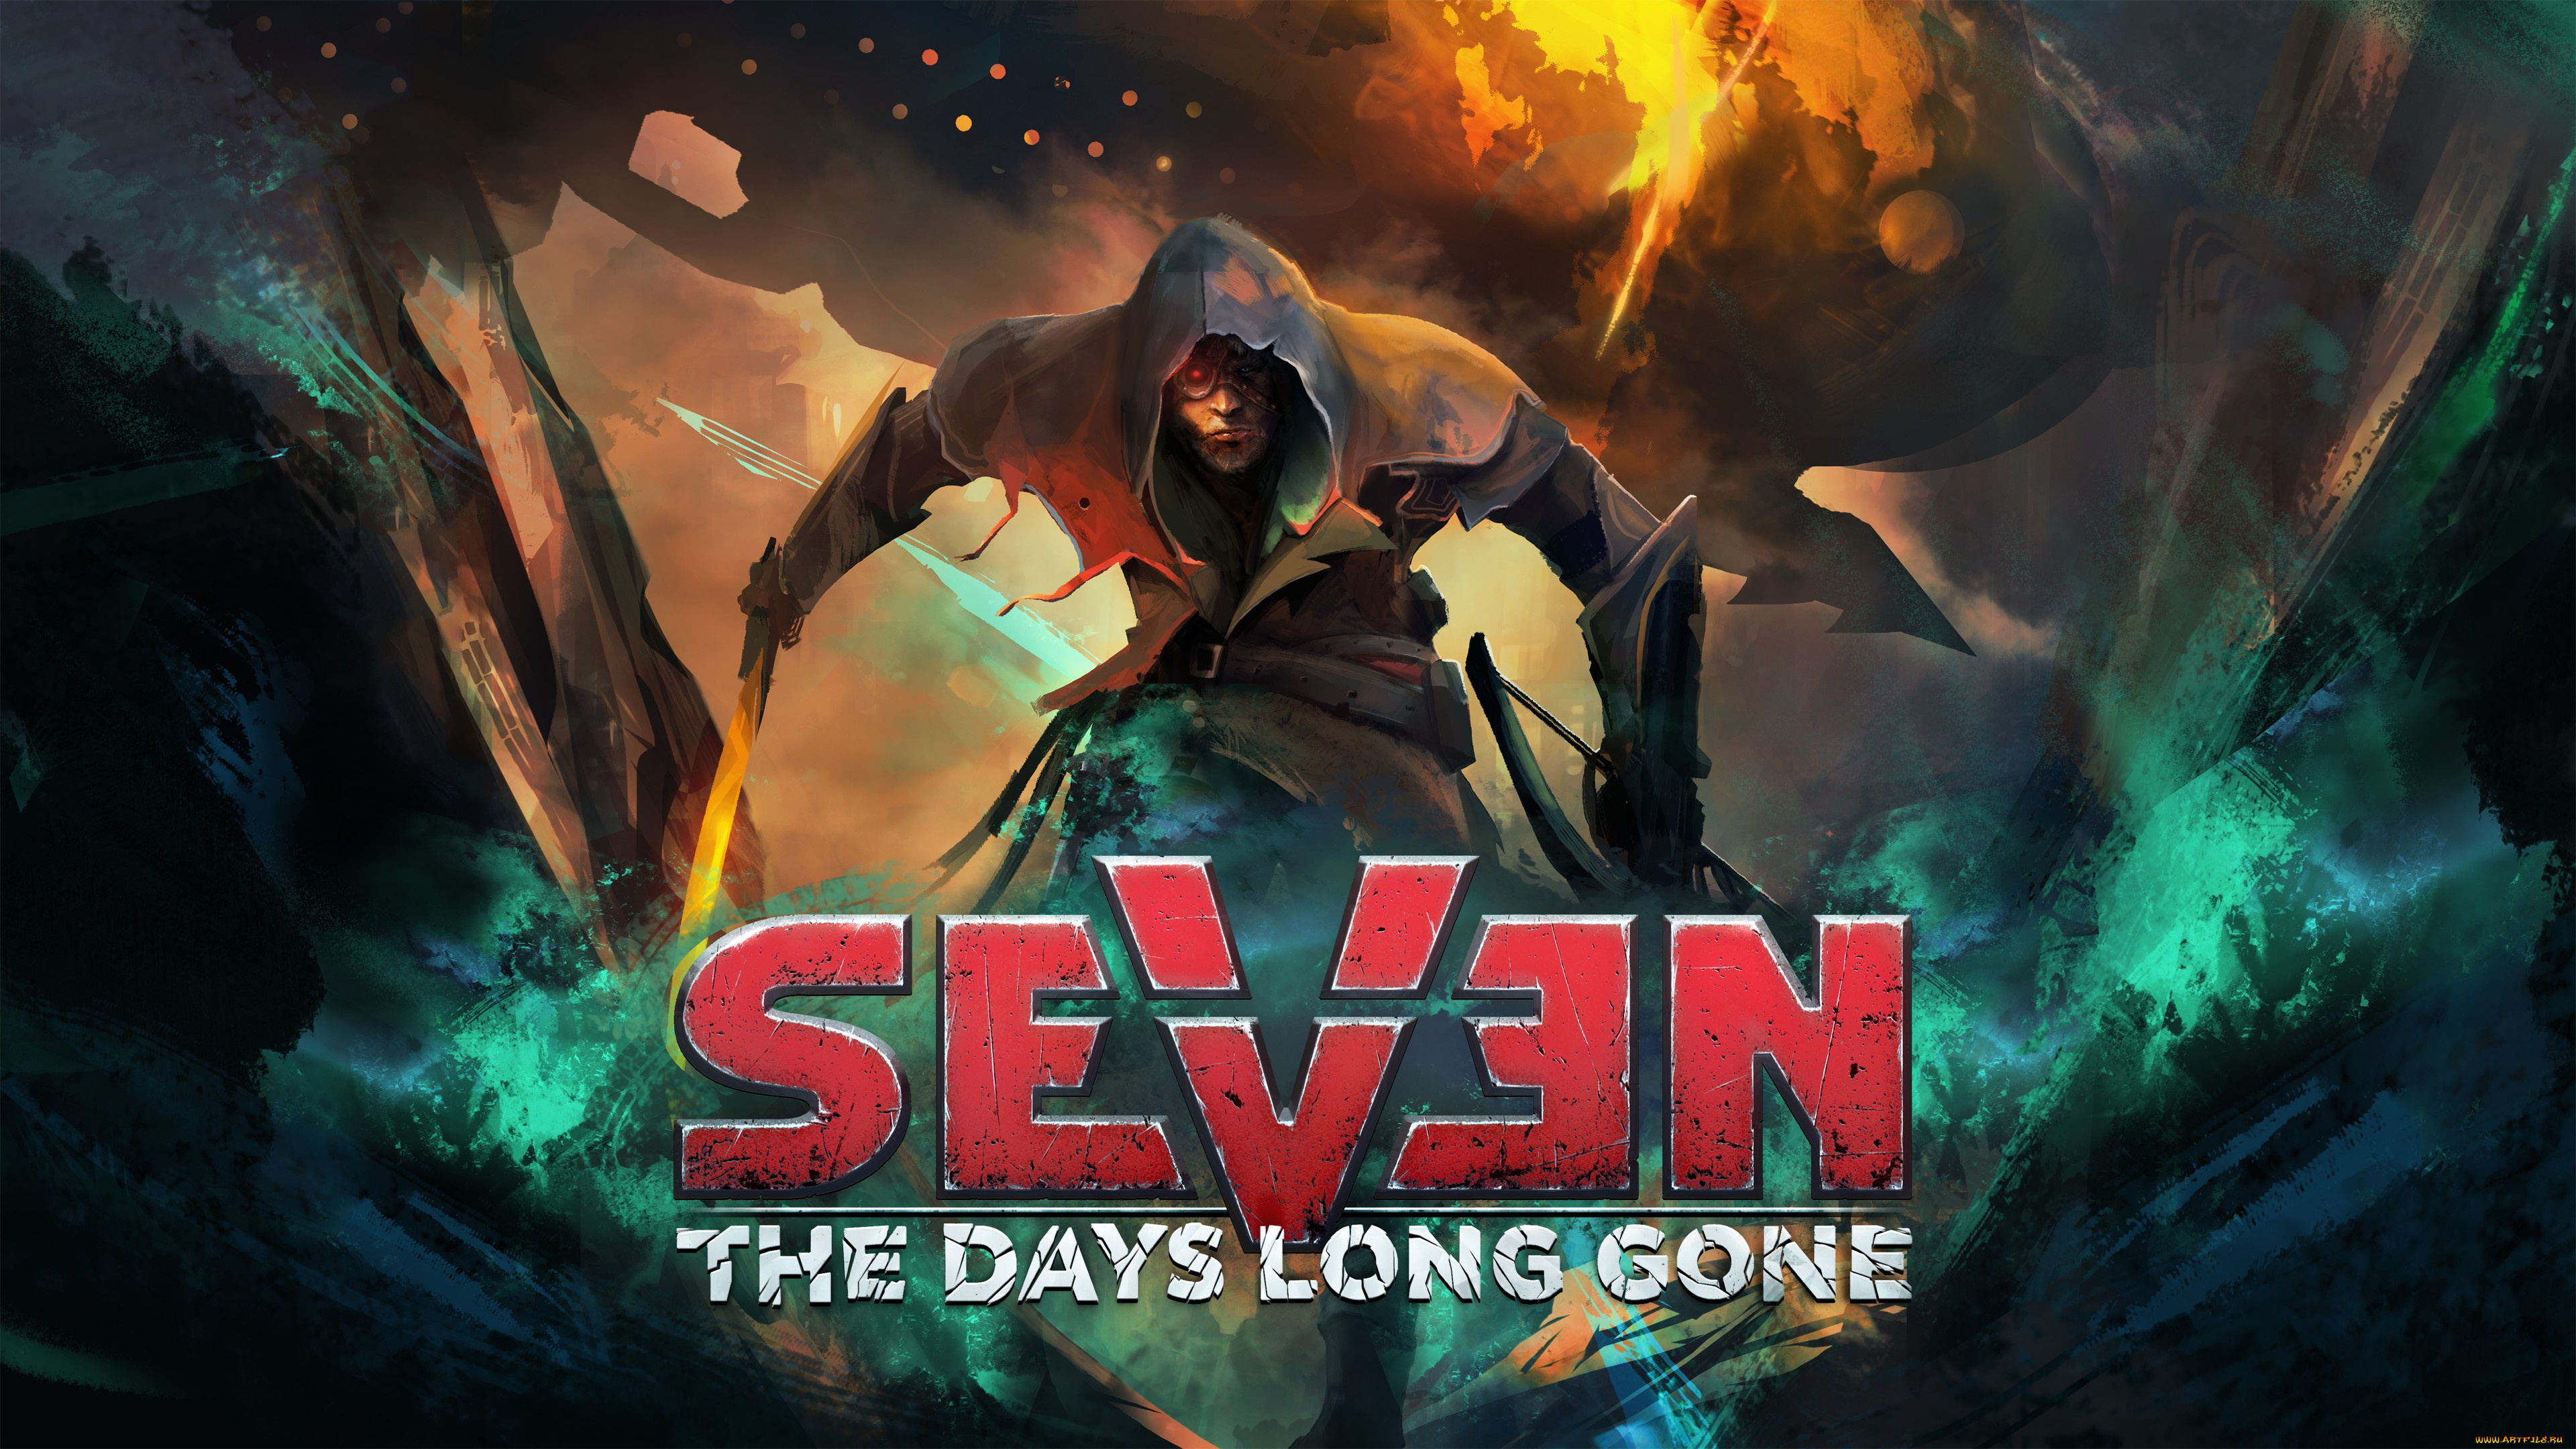 Pro 7 games. Севен игра. Seven: the Days long gone. Seven: enhanced the Days long gone. 7 Days long gone.